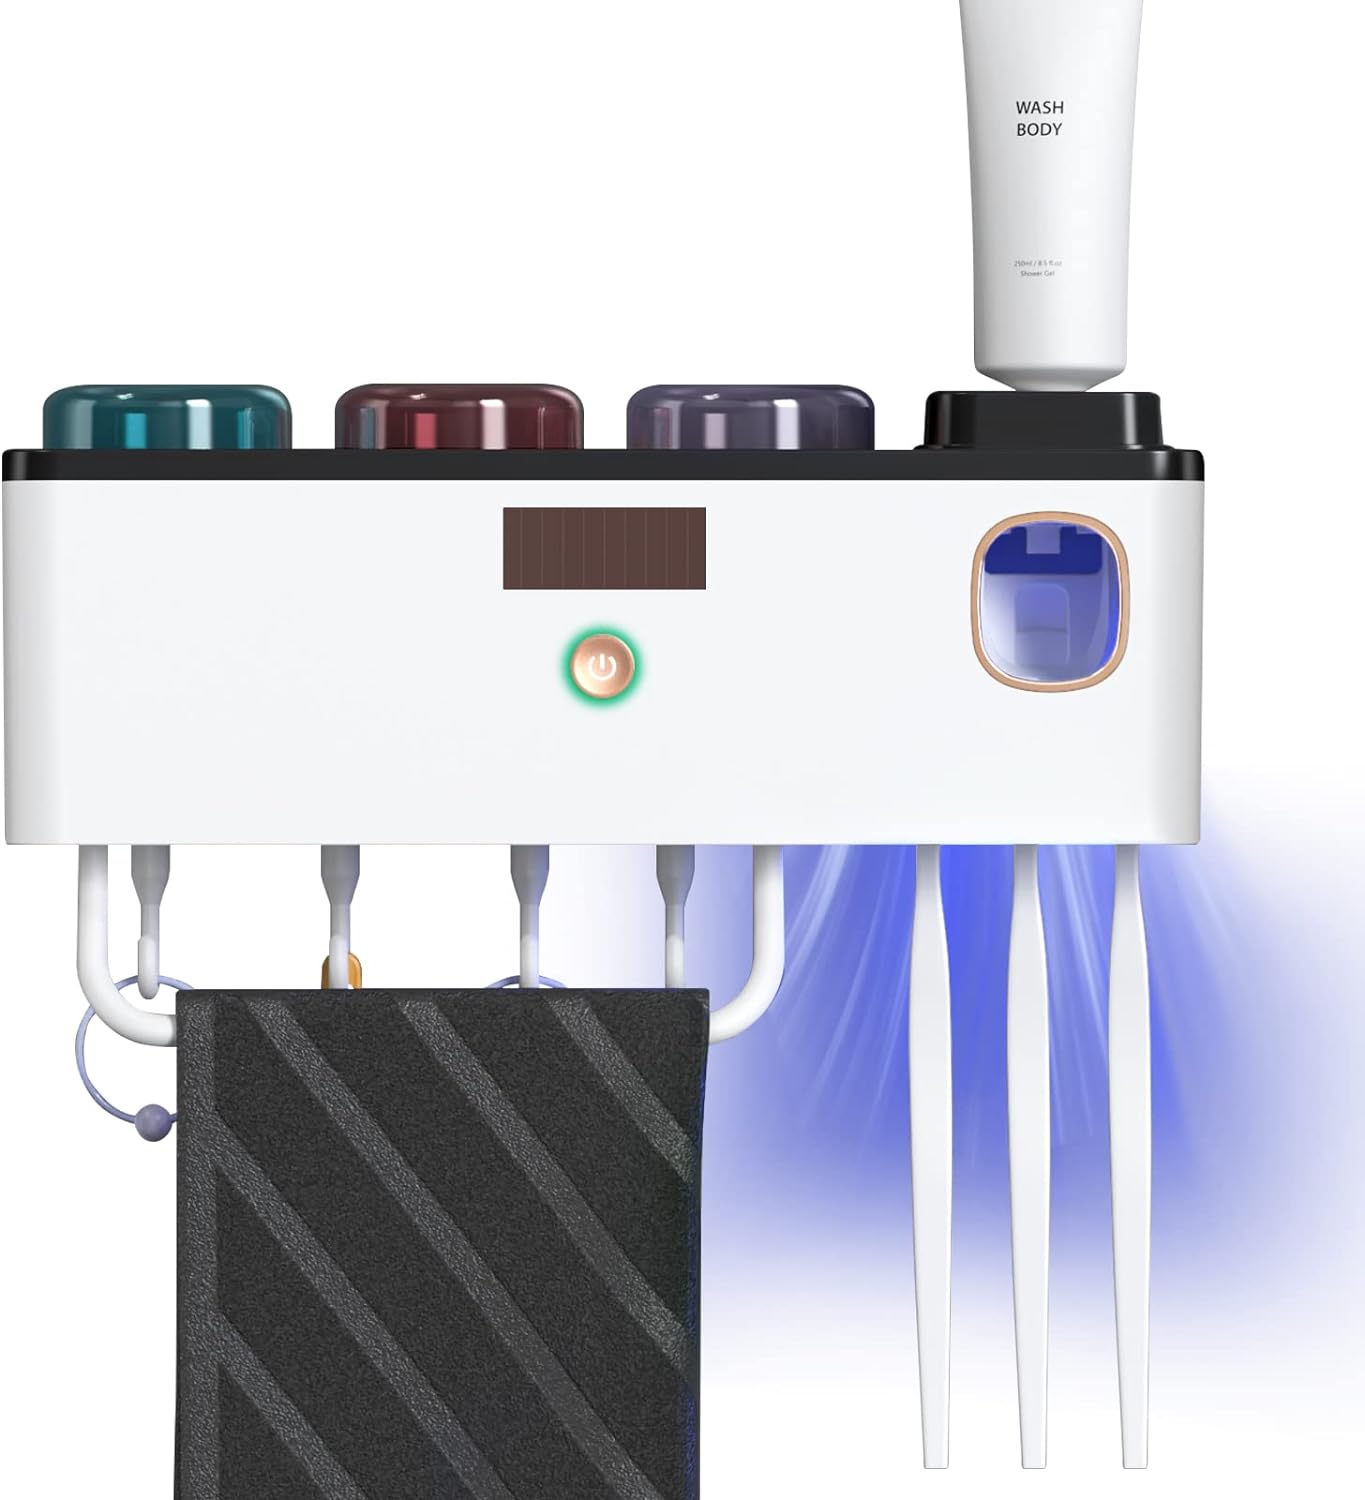 Sterilizator UV pentru periute de dinti , Dozator de pasta, 4 pahare individuale cu atasare magnetica, 4 suporturi de sterilizare, montaj pe perete, incarcare USB si panou energie solara, alb